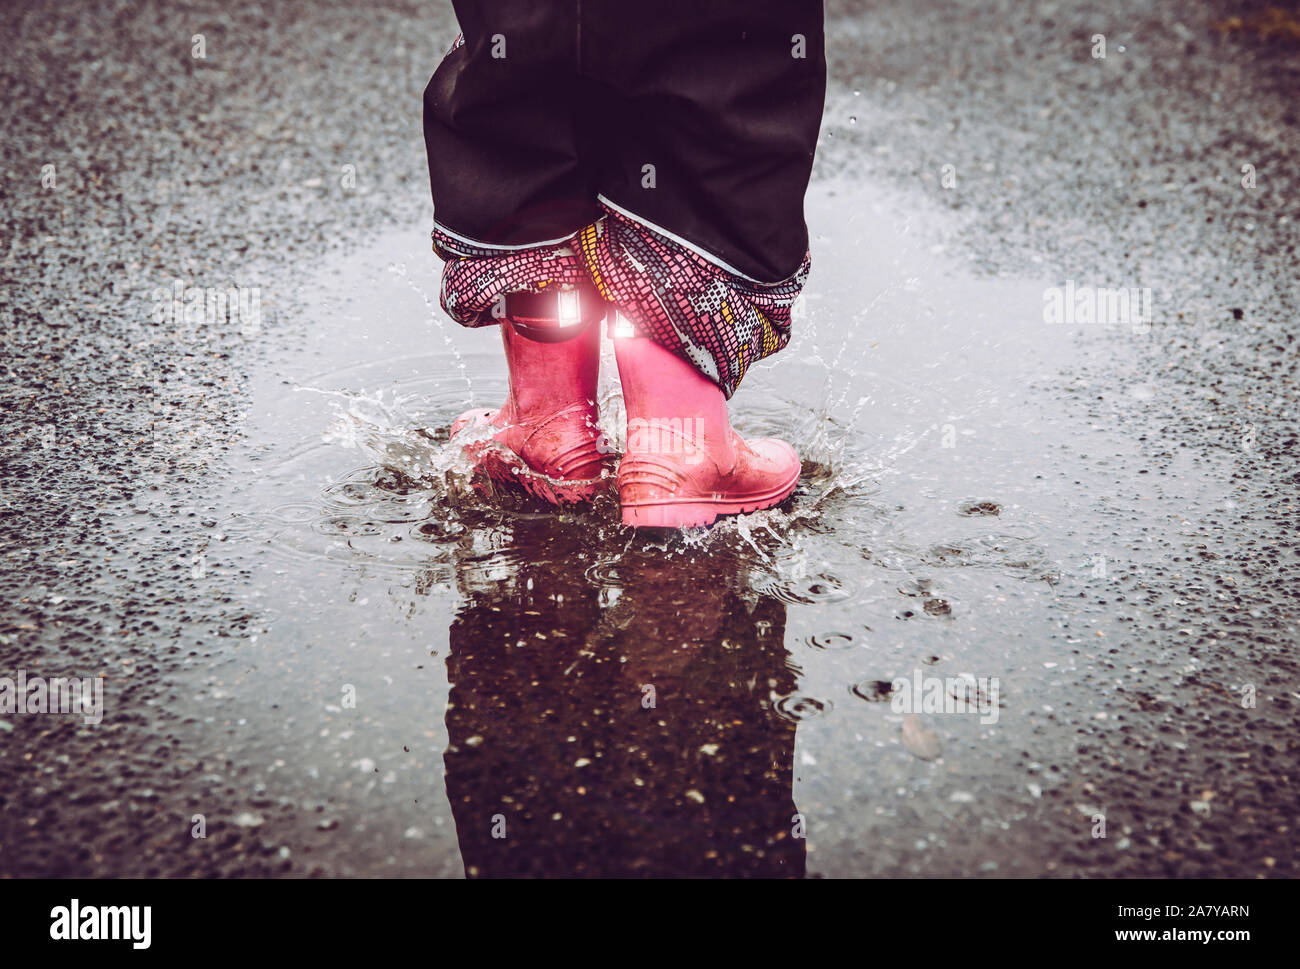 Mädchen Spaß, im Wasser Pfütze auf nasser Straße springen, das Tragen von regen Stiefel mit Reflektierende Details Stoff Streifen scheint. Hohe Sichtbarkeit und Sicherheit i Stockfoto